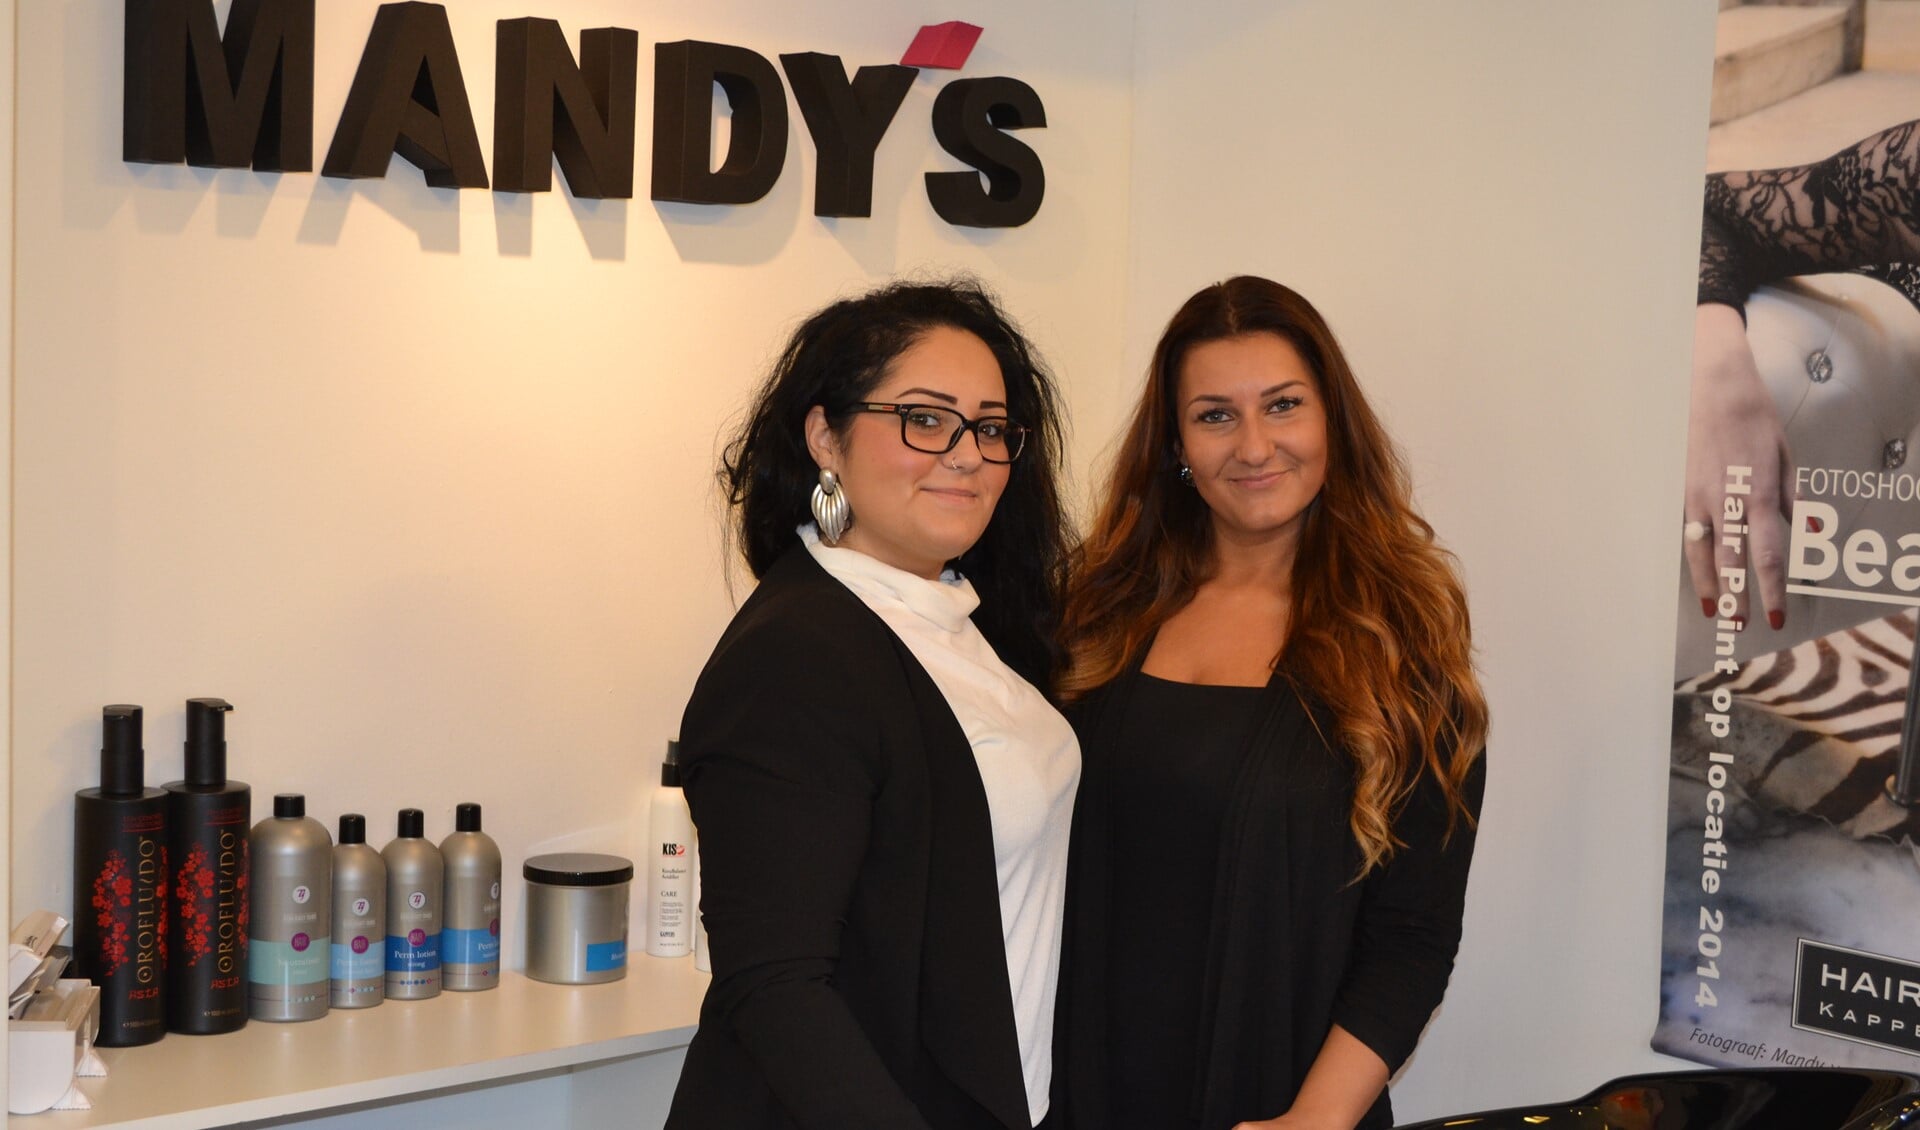 De nieuwe kapsalon Mandy's Haarsalon wordt gerund door de jonge ondernemers Mandy en Irem (foto: Inge Koot).